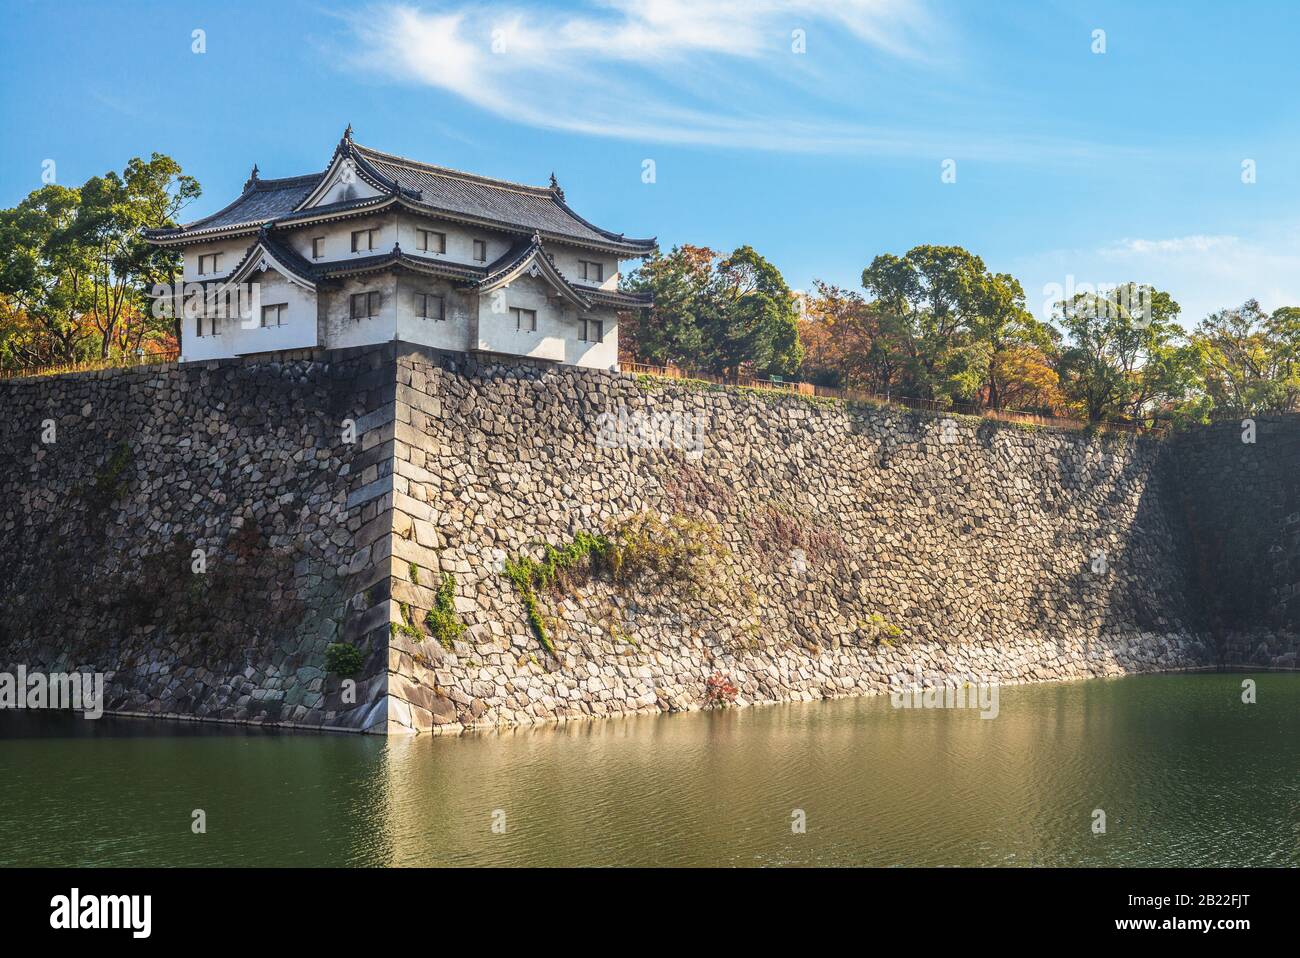 Yagura and Moat of Osaka castle in osaka, japan Stock Photo